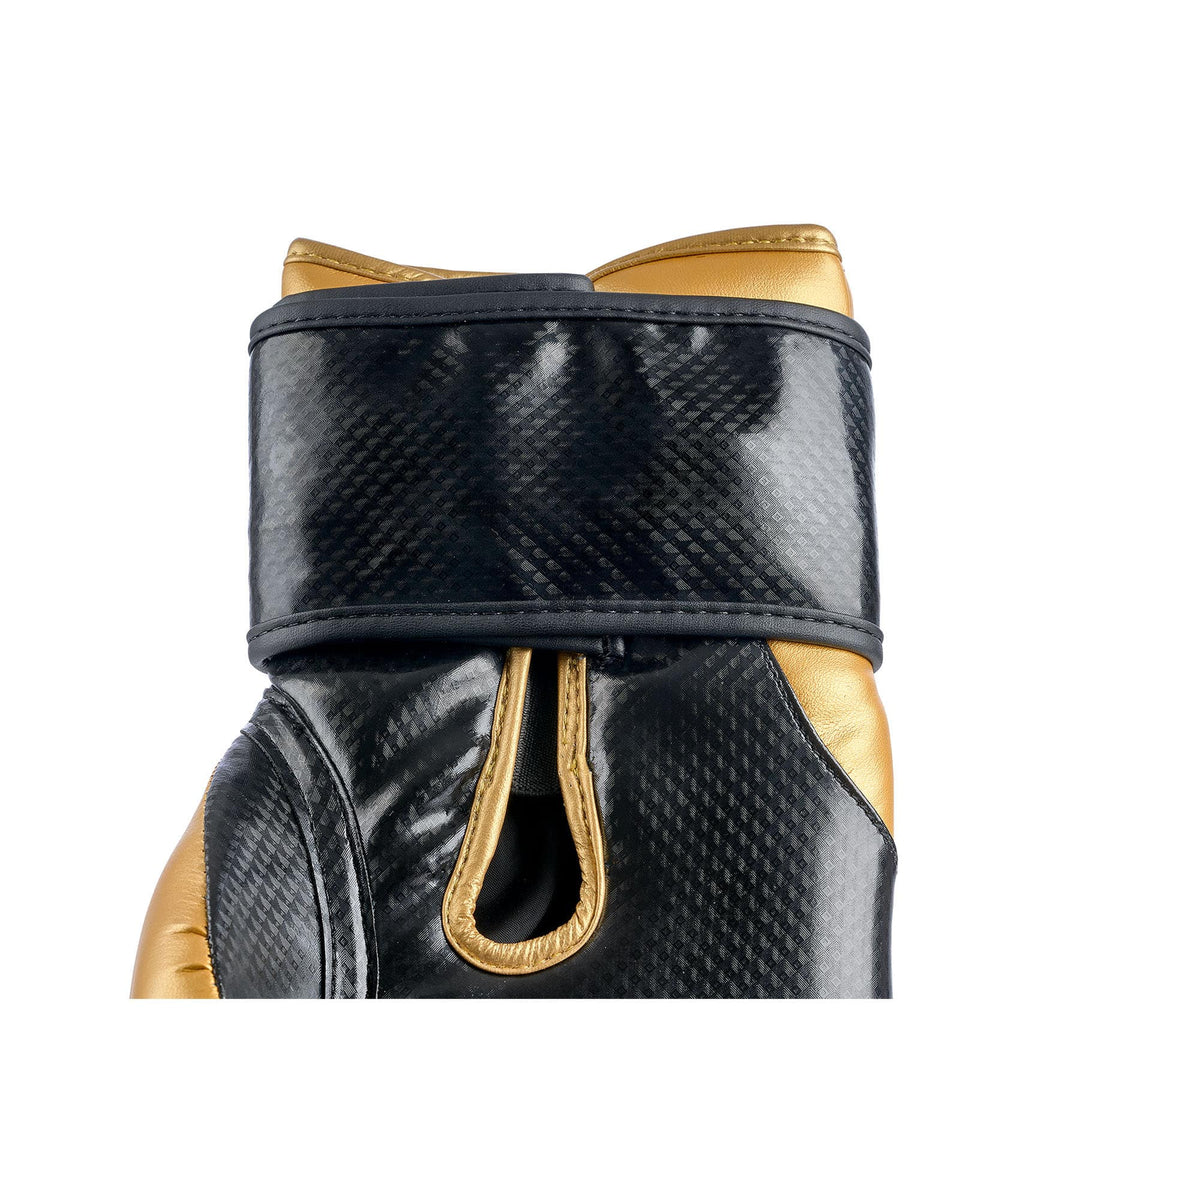 Klettverschluss Innenseite schwarz goldene Boxhandschuhe aus Leder in einer größeren Aufnahme, auch die Innenseite der Boxhandschuhe sind sichtbar